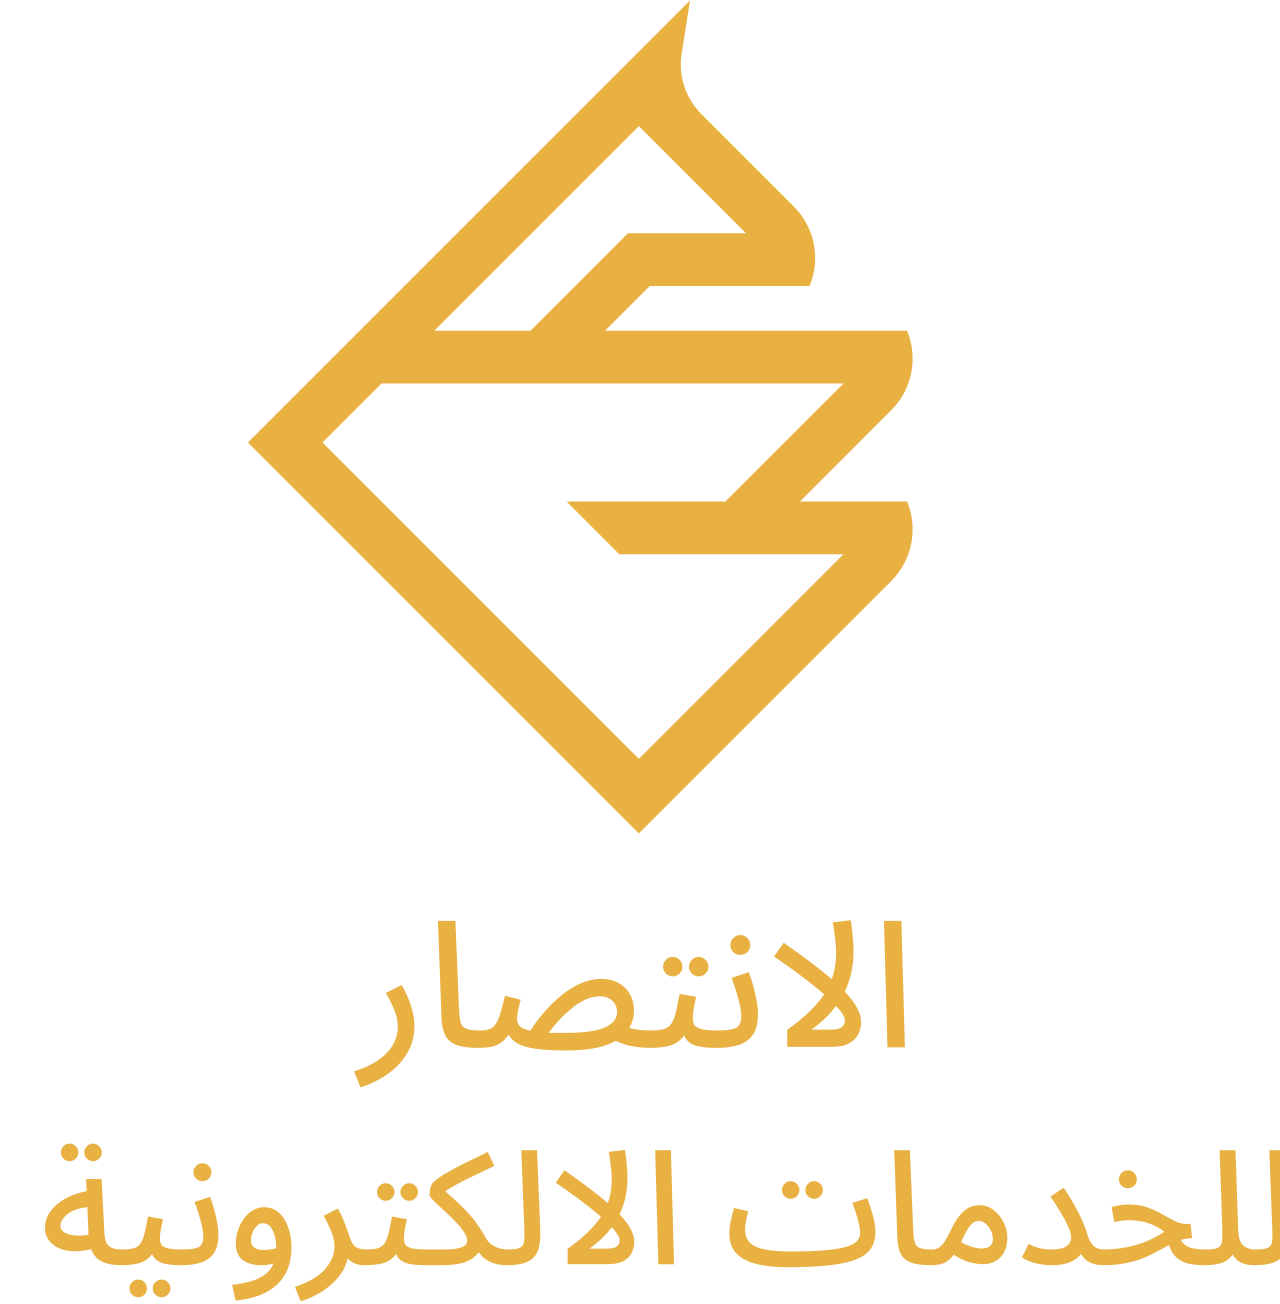 الانتصار's logo